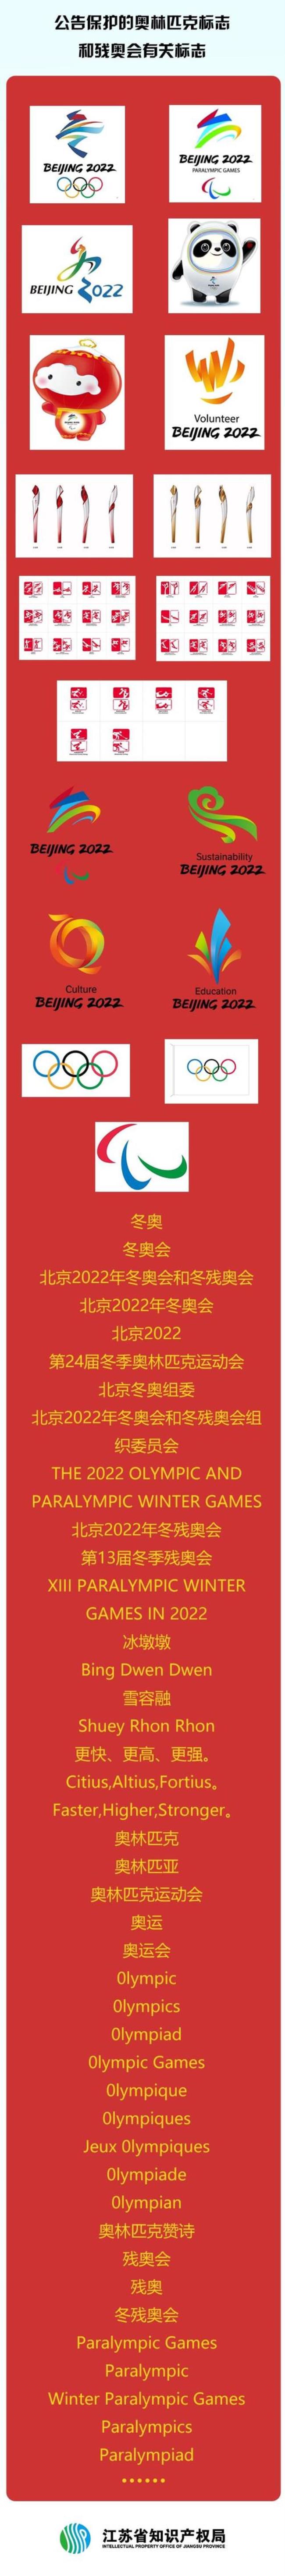 2022冬残奥运动会会徽